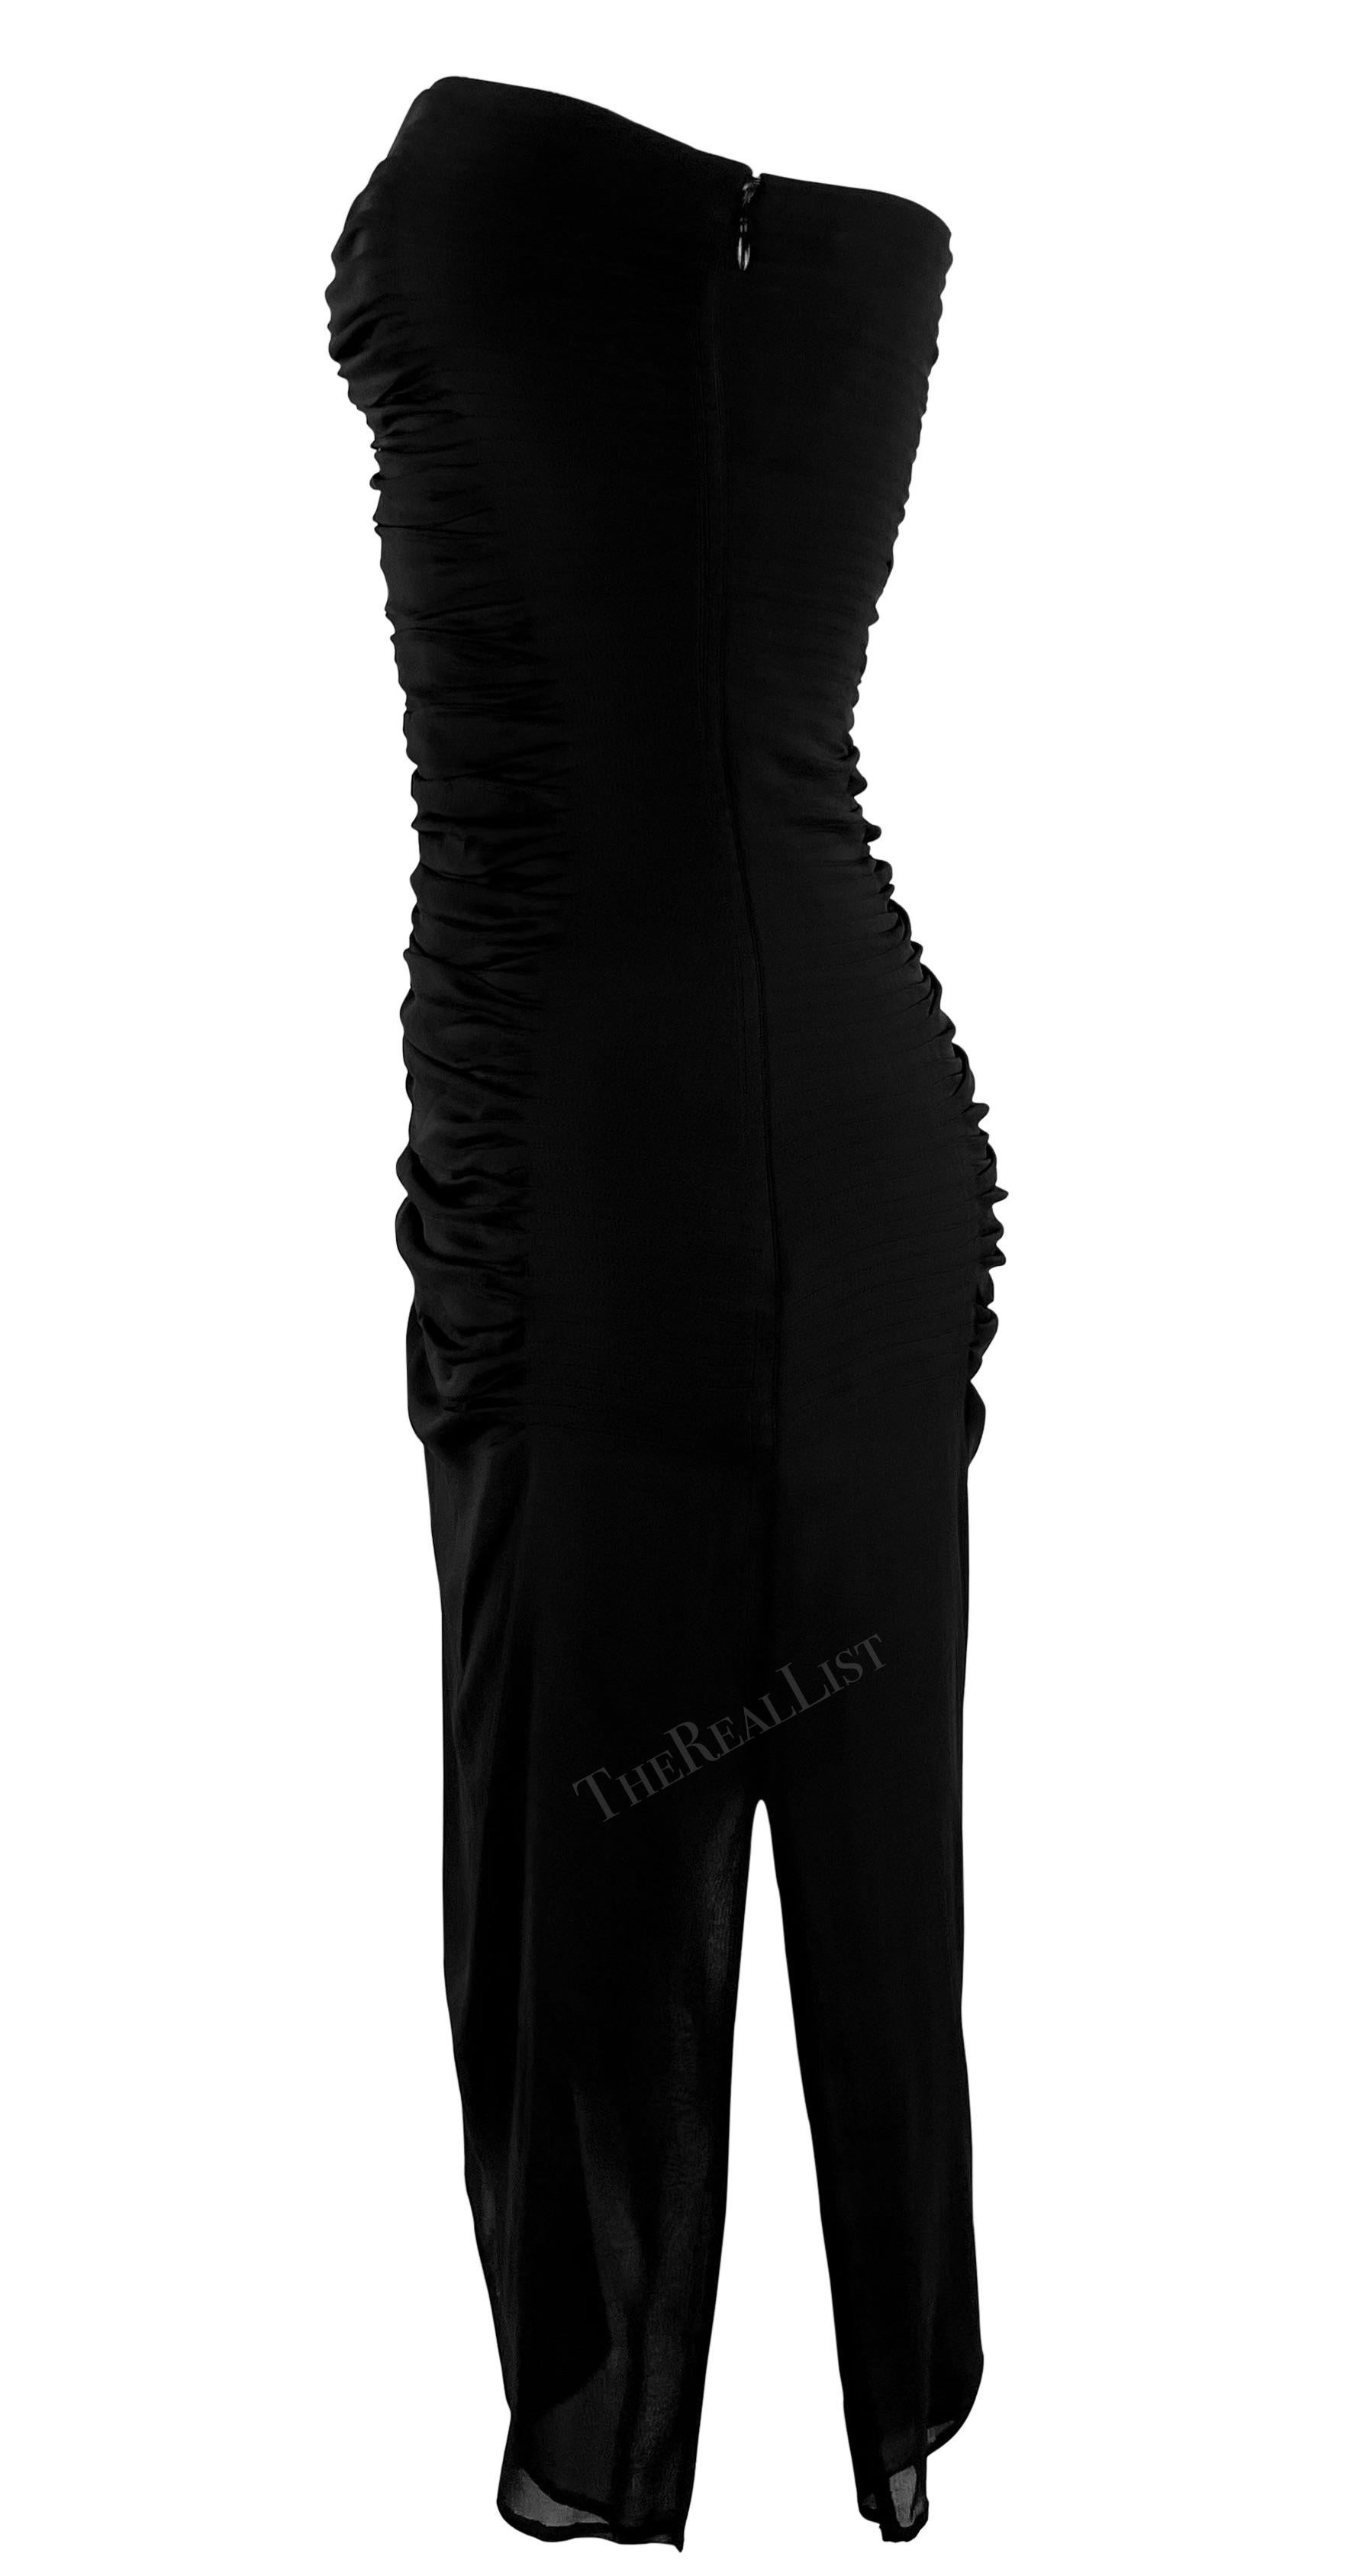 Women's S/S 2001 Yves Saint Laurent by Tom Ford Sheer Black Pleated Strapless Mini Dress For Sale